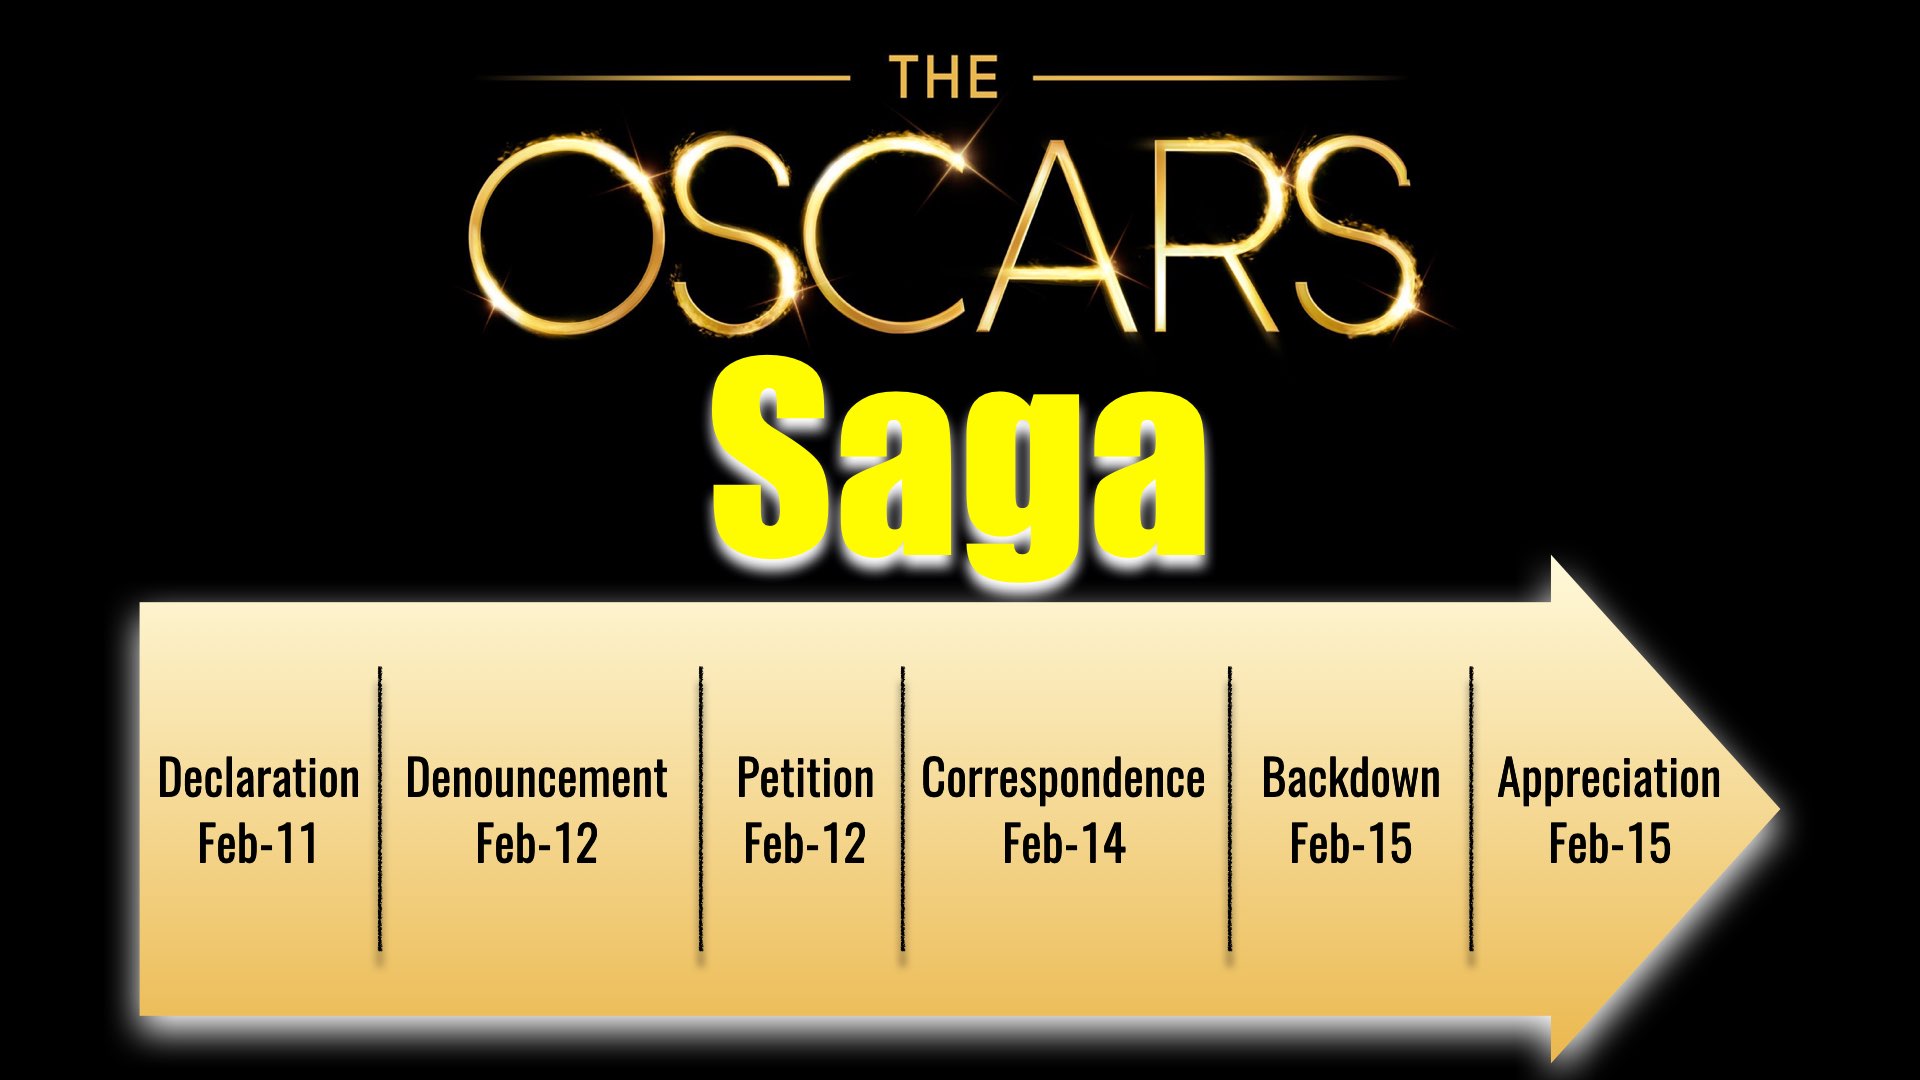 Oscar 2019 Saga timeline